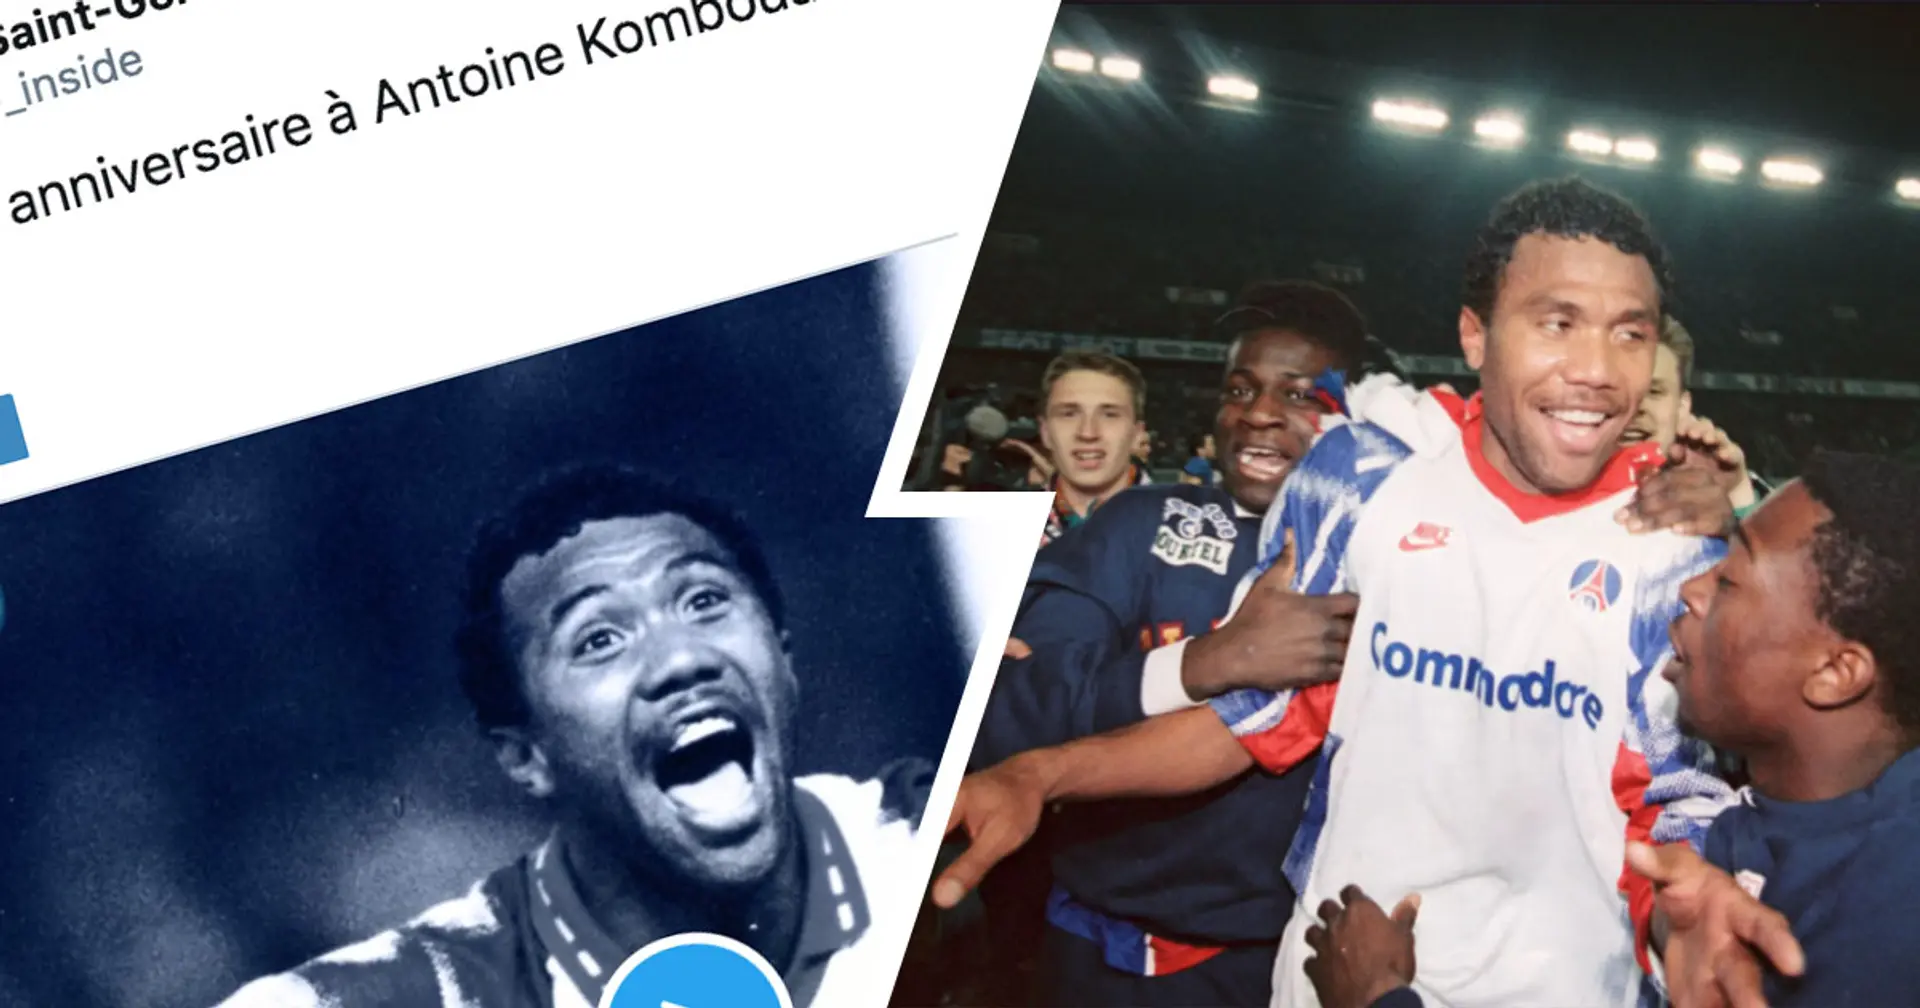 Une pensée pour "Casque d'or": Antoine Kombouaré a fêté son anniversaire! 